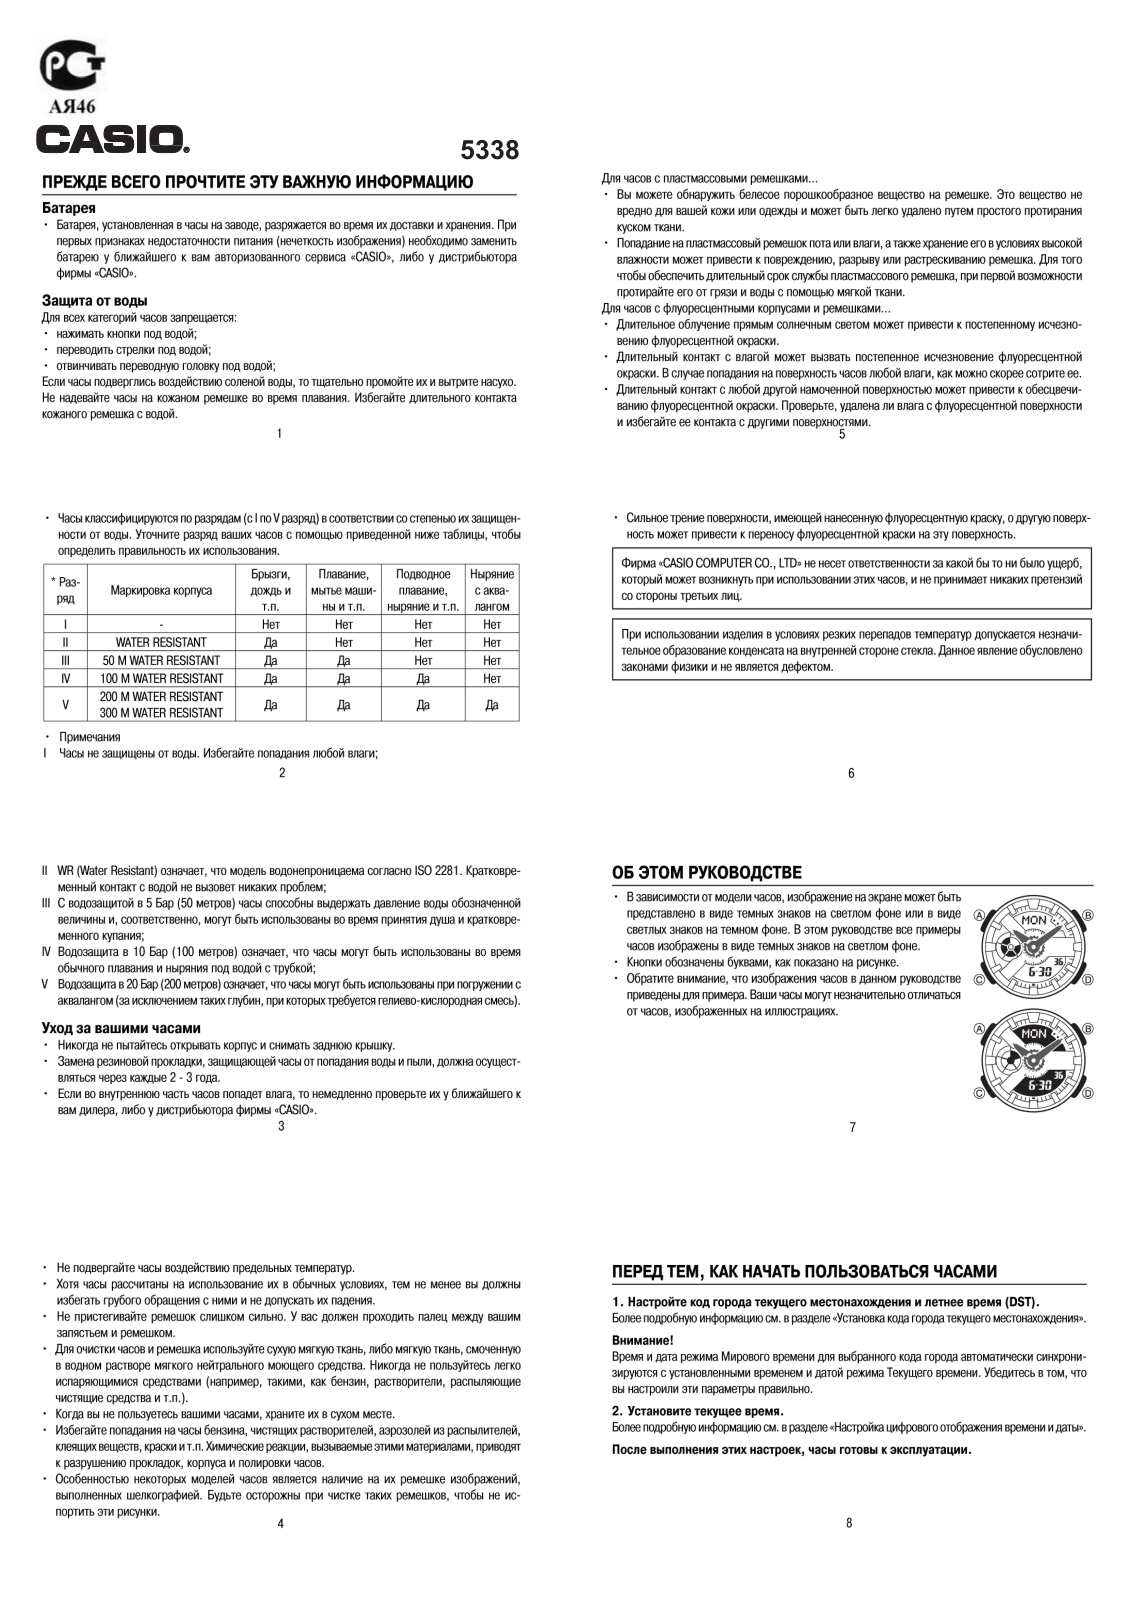 Casio BA-110CR-7A User Manual